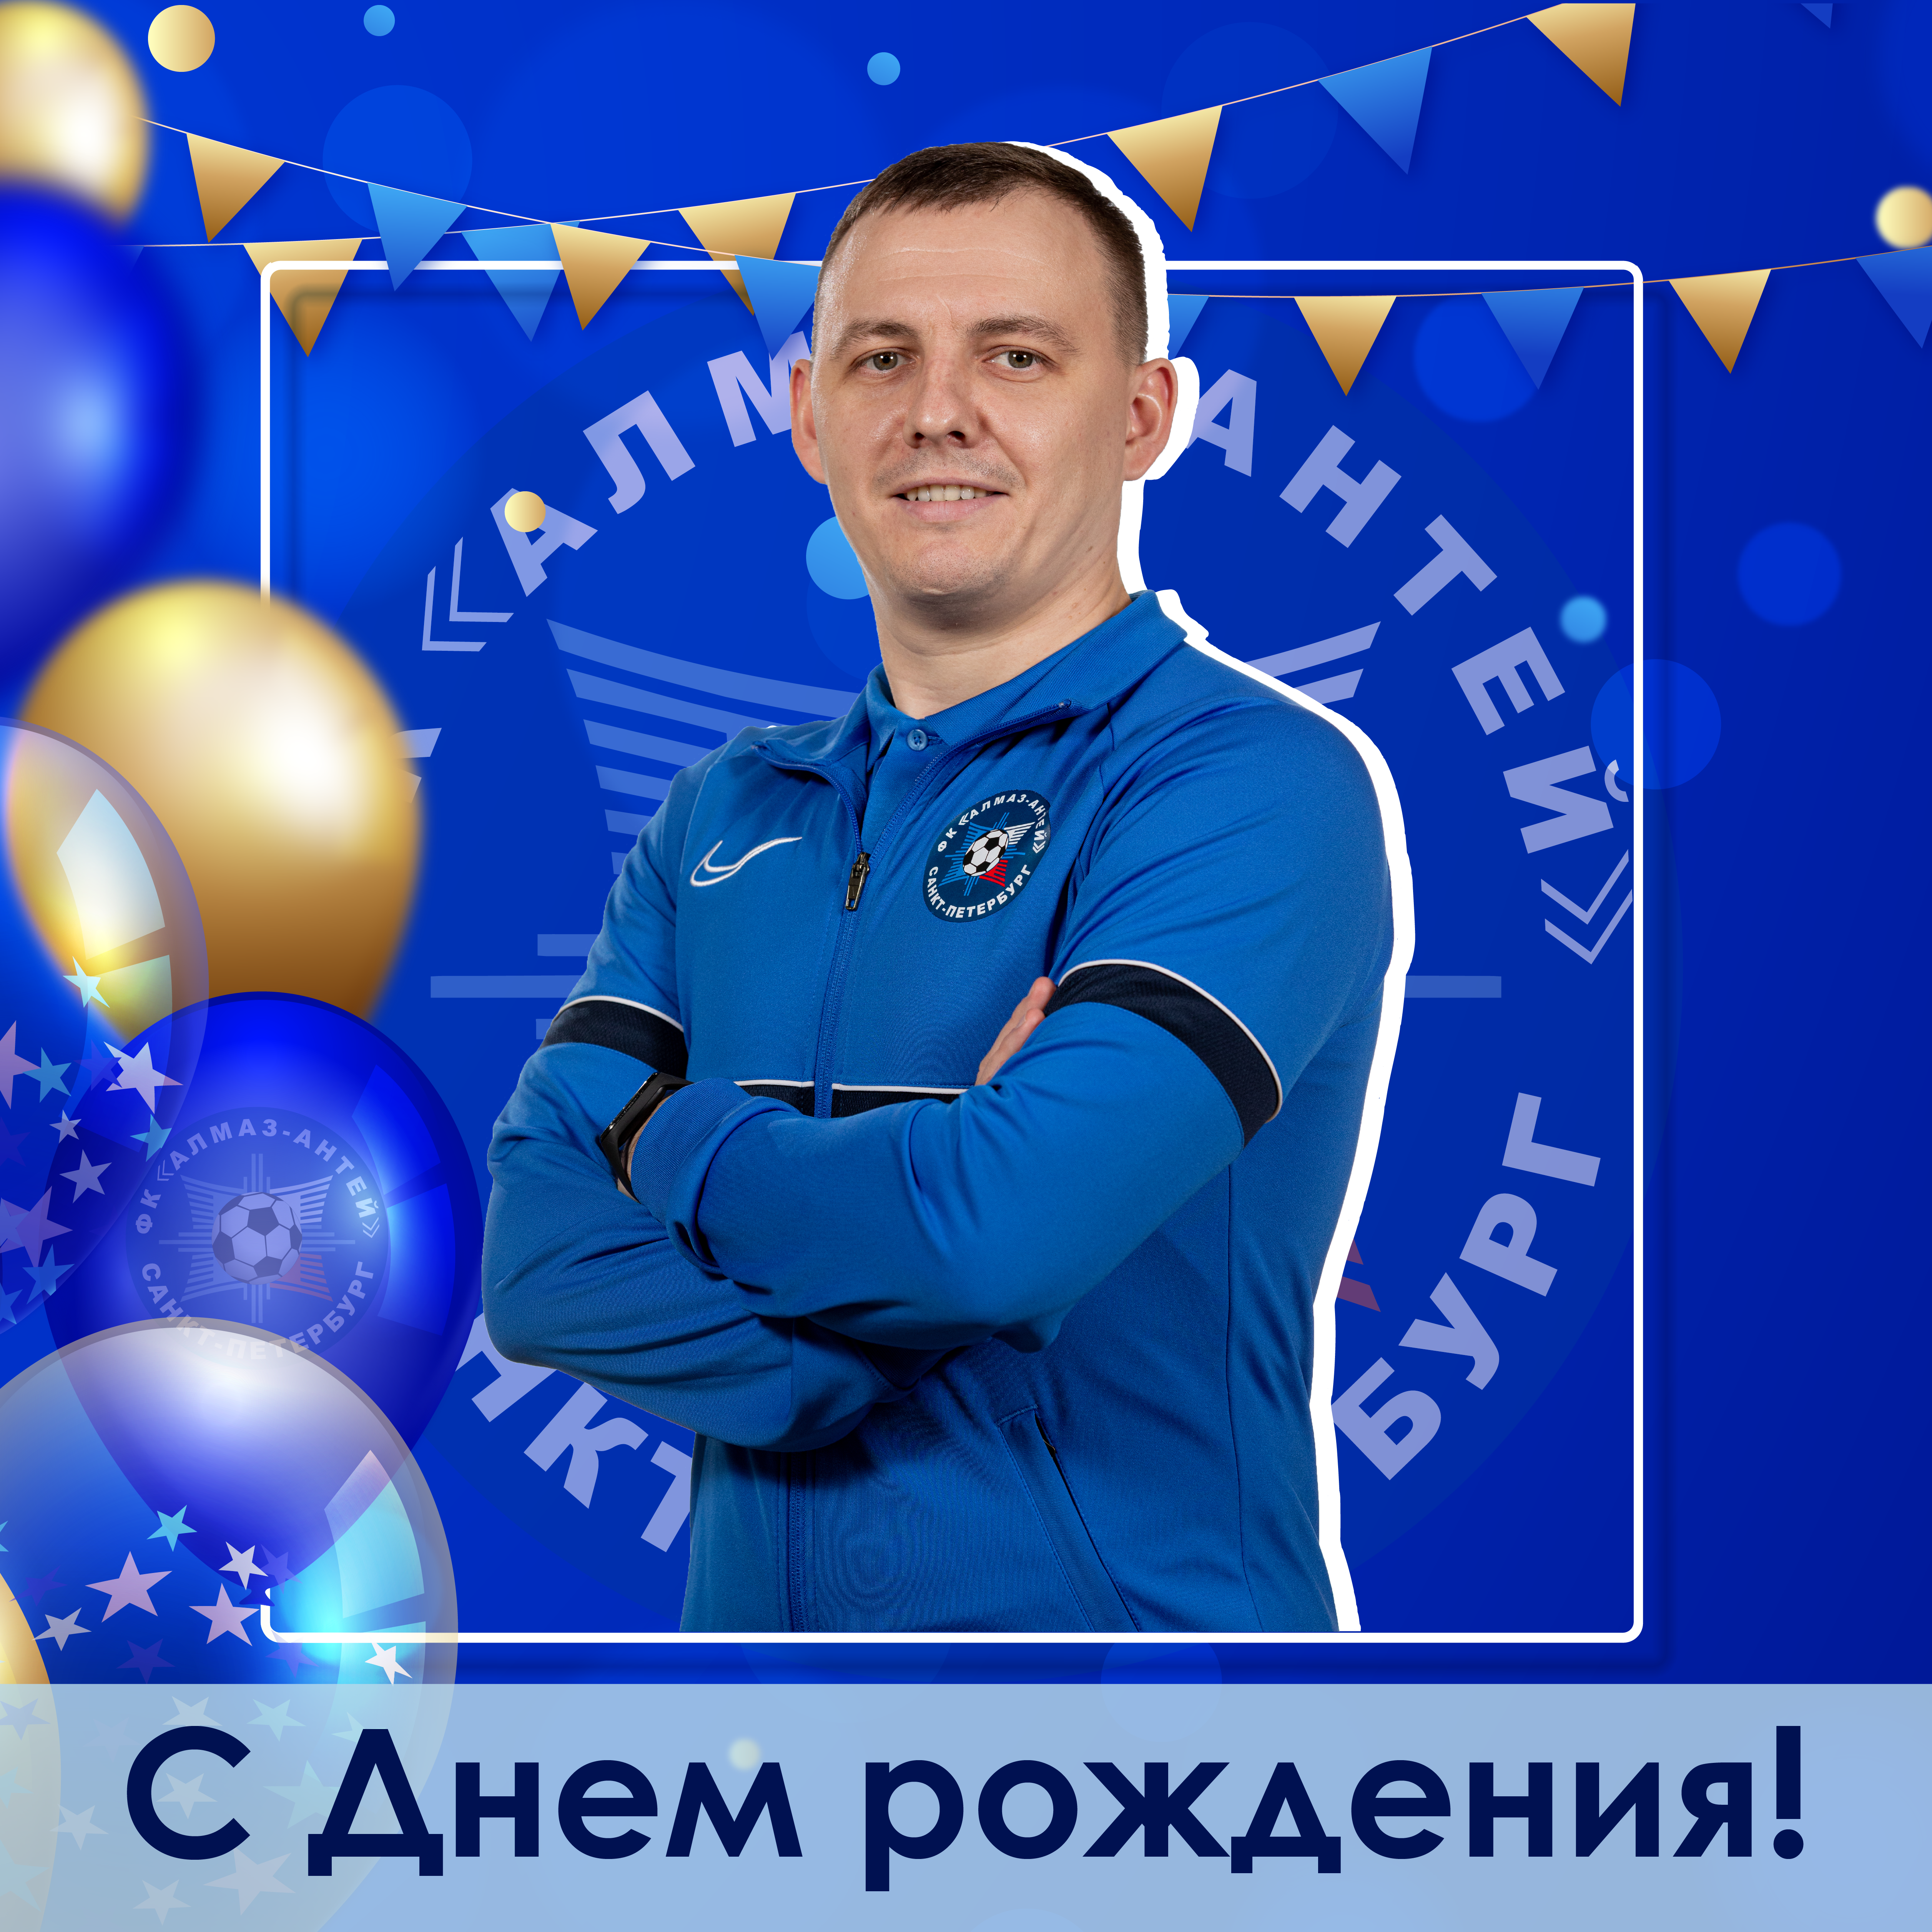 Поздравления с днем рождения футболисту